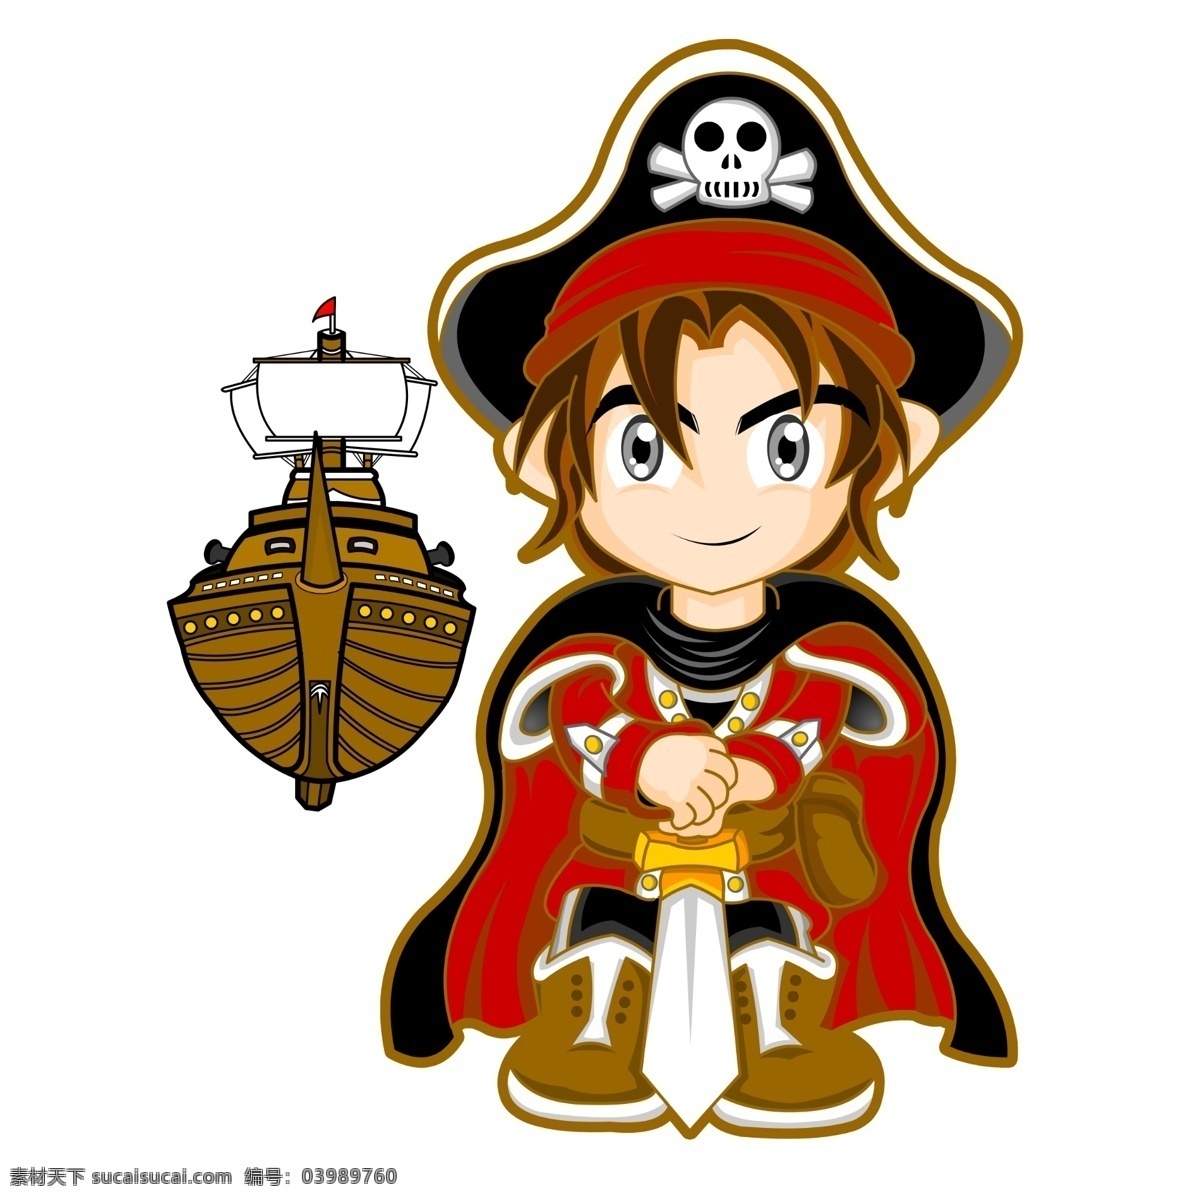 原创 手绘 卡通 海盗 船长 三帆船 卡通动漫 动漫动画 动漫人物